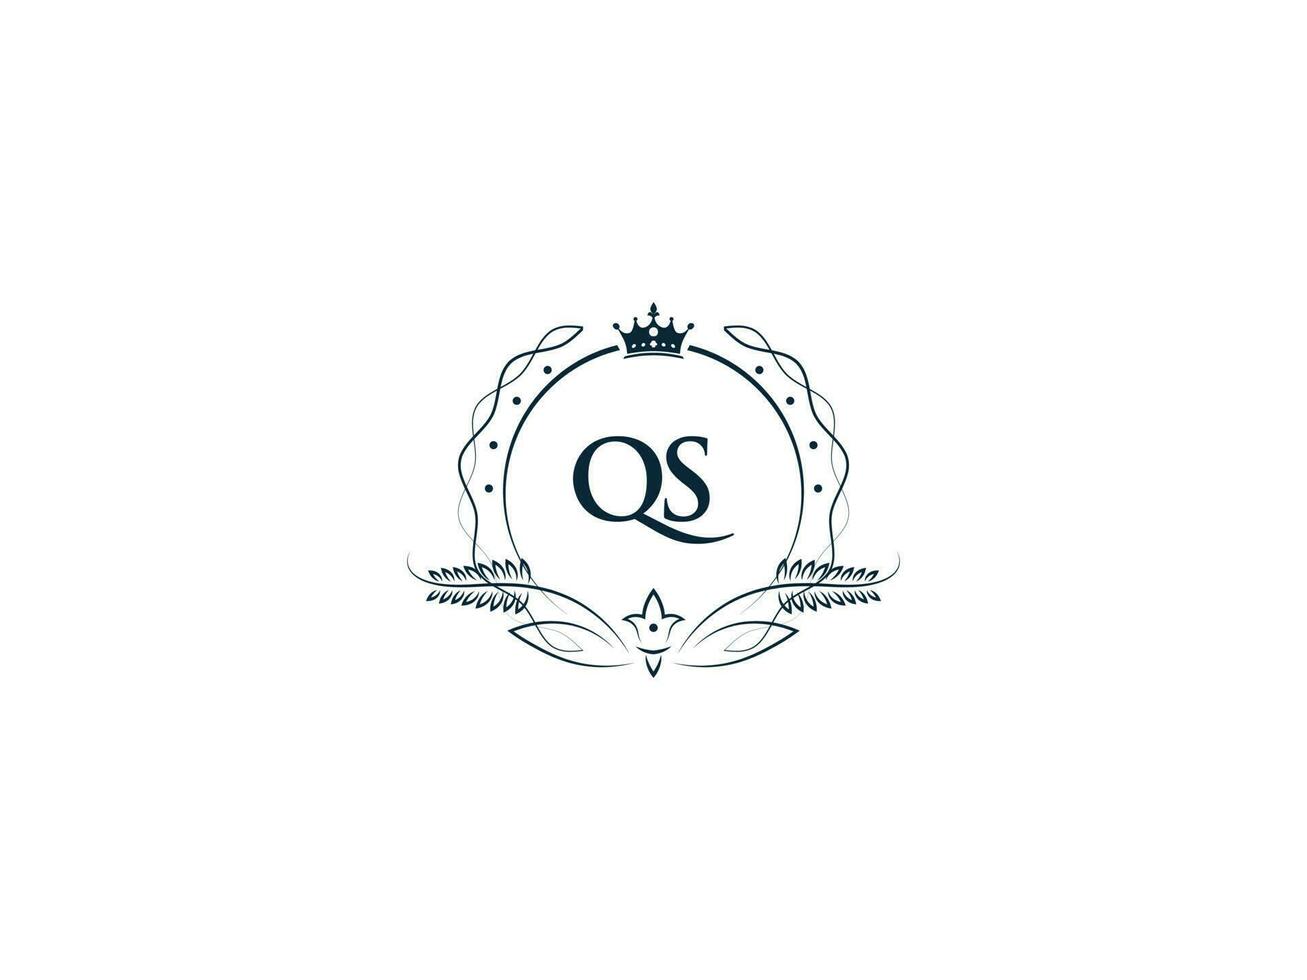 Premium Royal Crown Qs Logo, Unique Letter Qs sq Logo Icon Vector Image Design